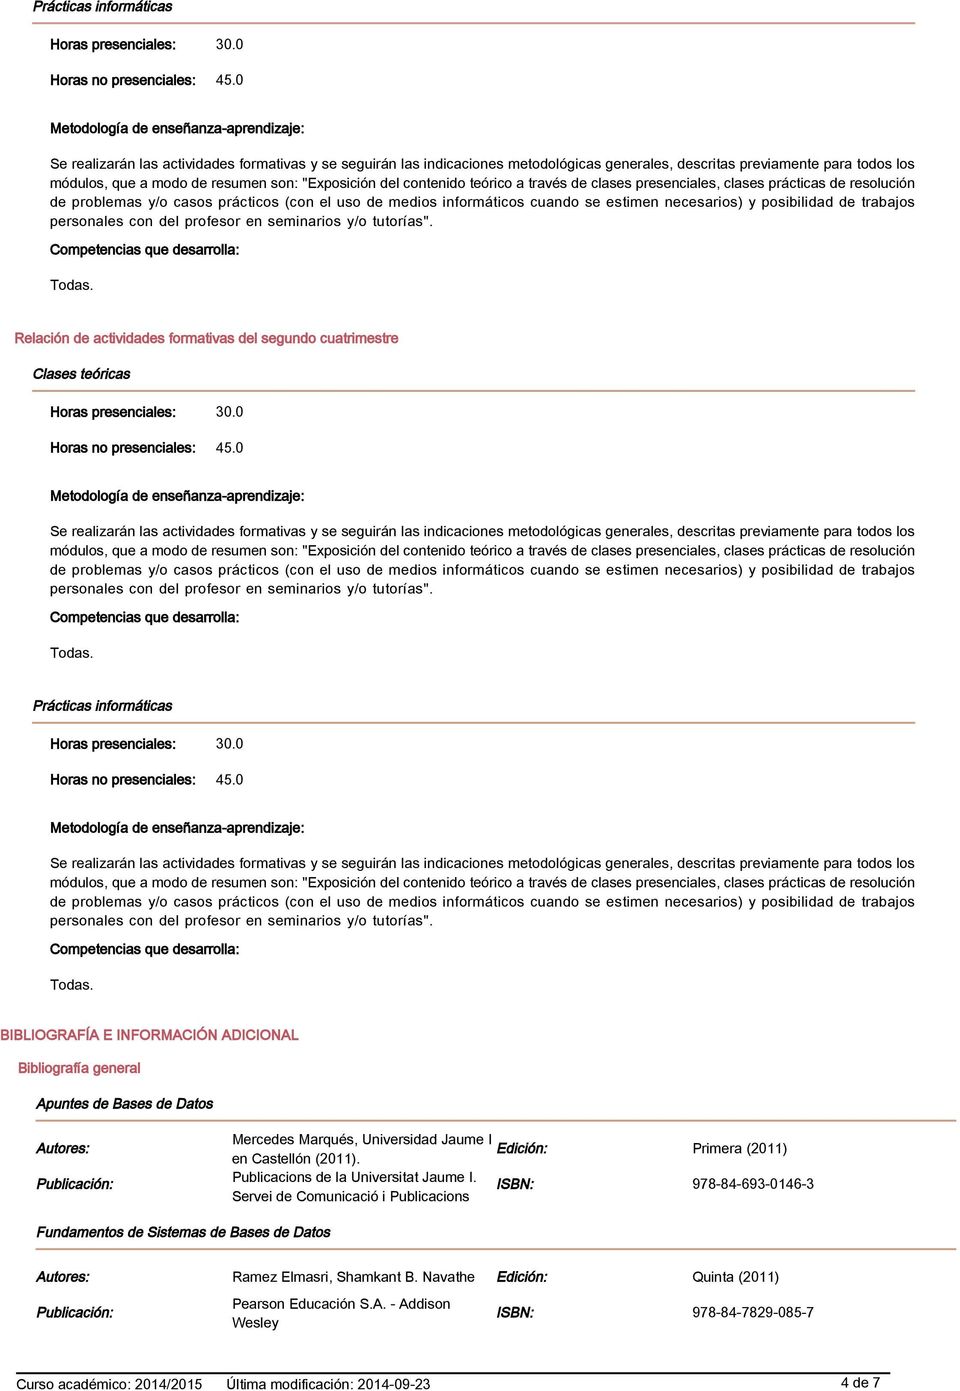 Publicación: Publicacions de la Universitat Jaume I.